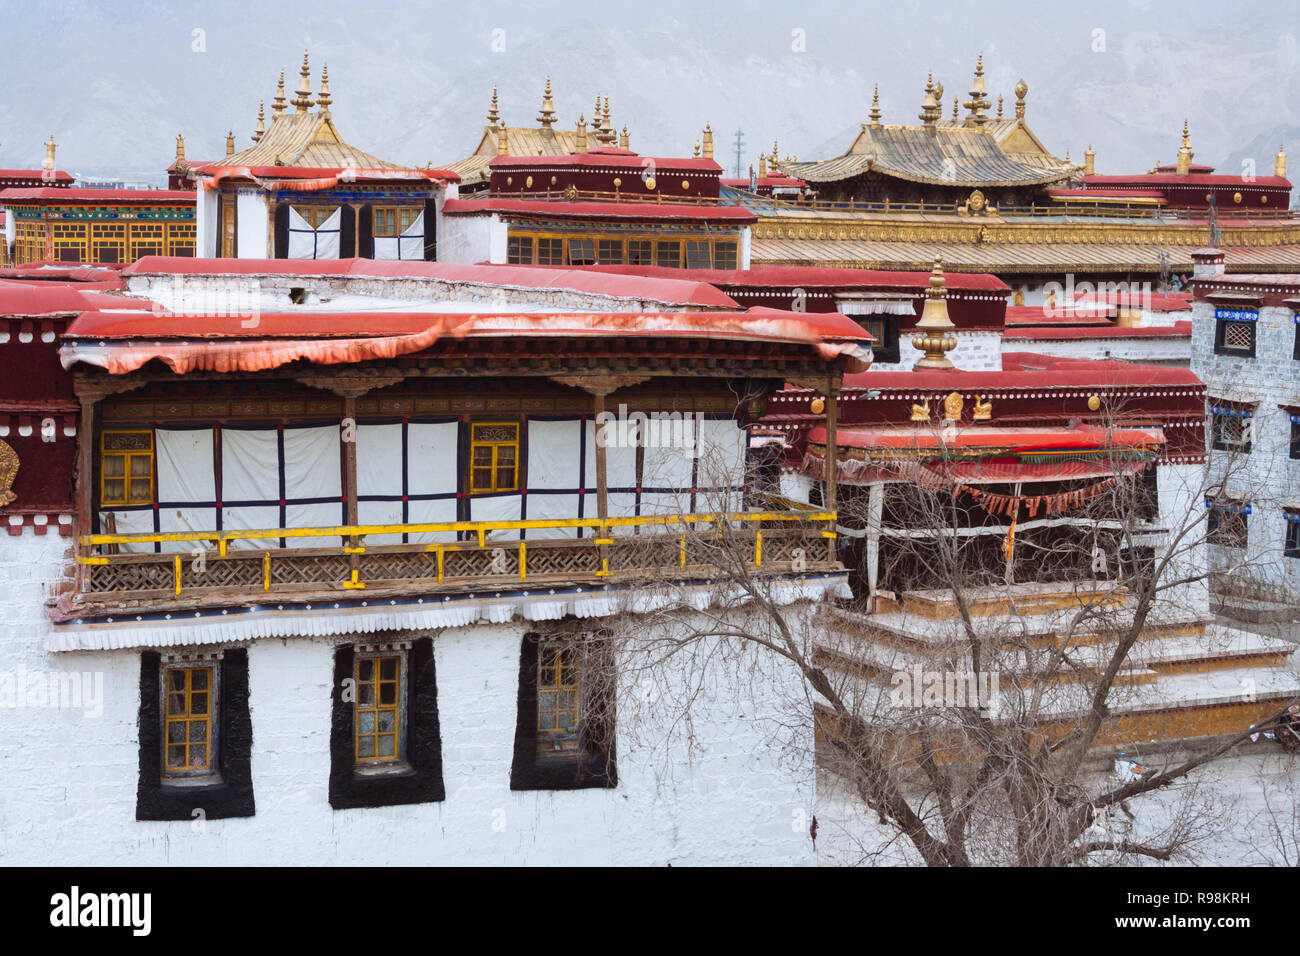 Lhasa, Tibet autonomen Region, China: Seitenansicht Der Jokhang Tempel. Der Jokhang ist als der heiligste Tempel in Tibet betrachtet. Zuerst in gebaut Stockfoto